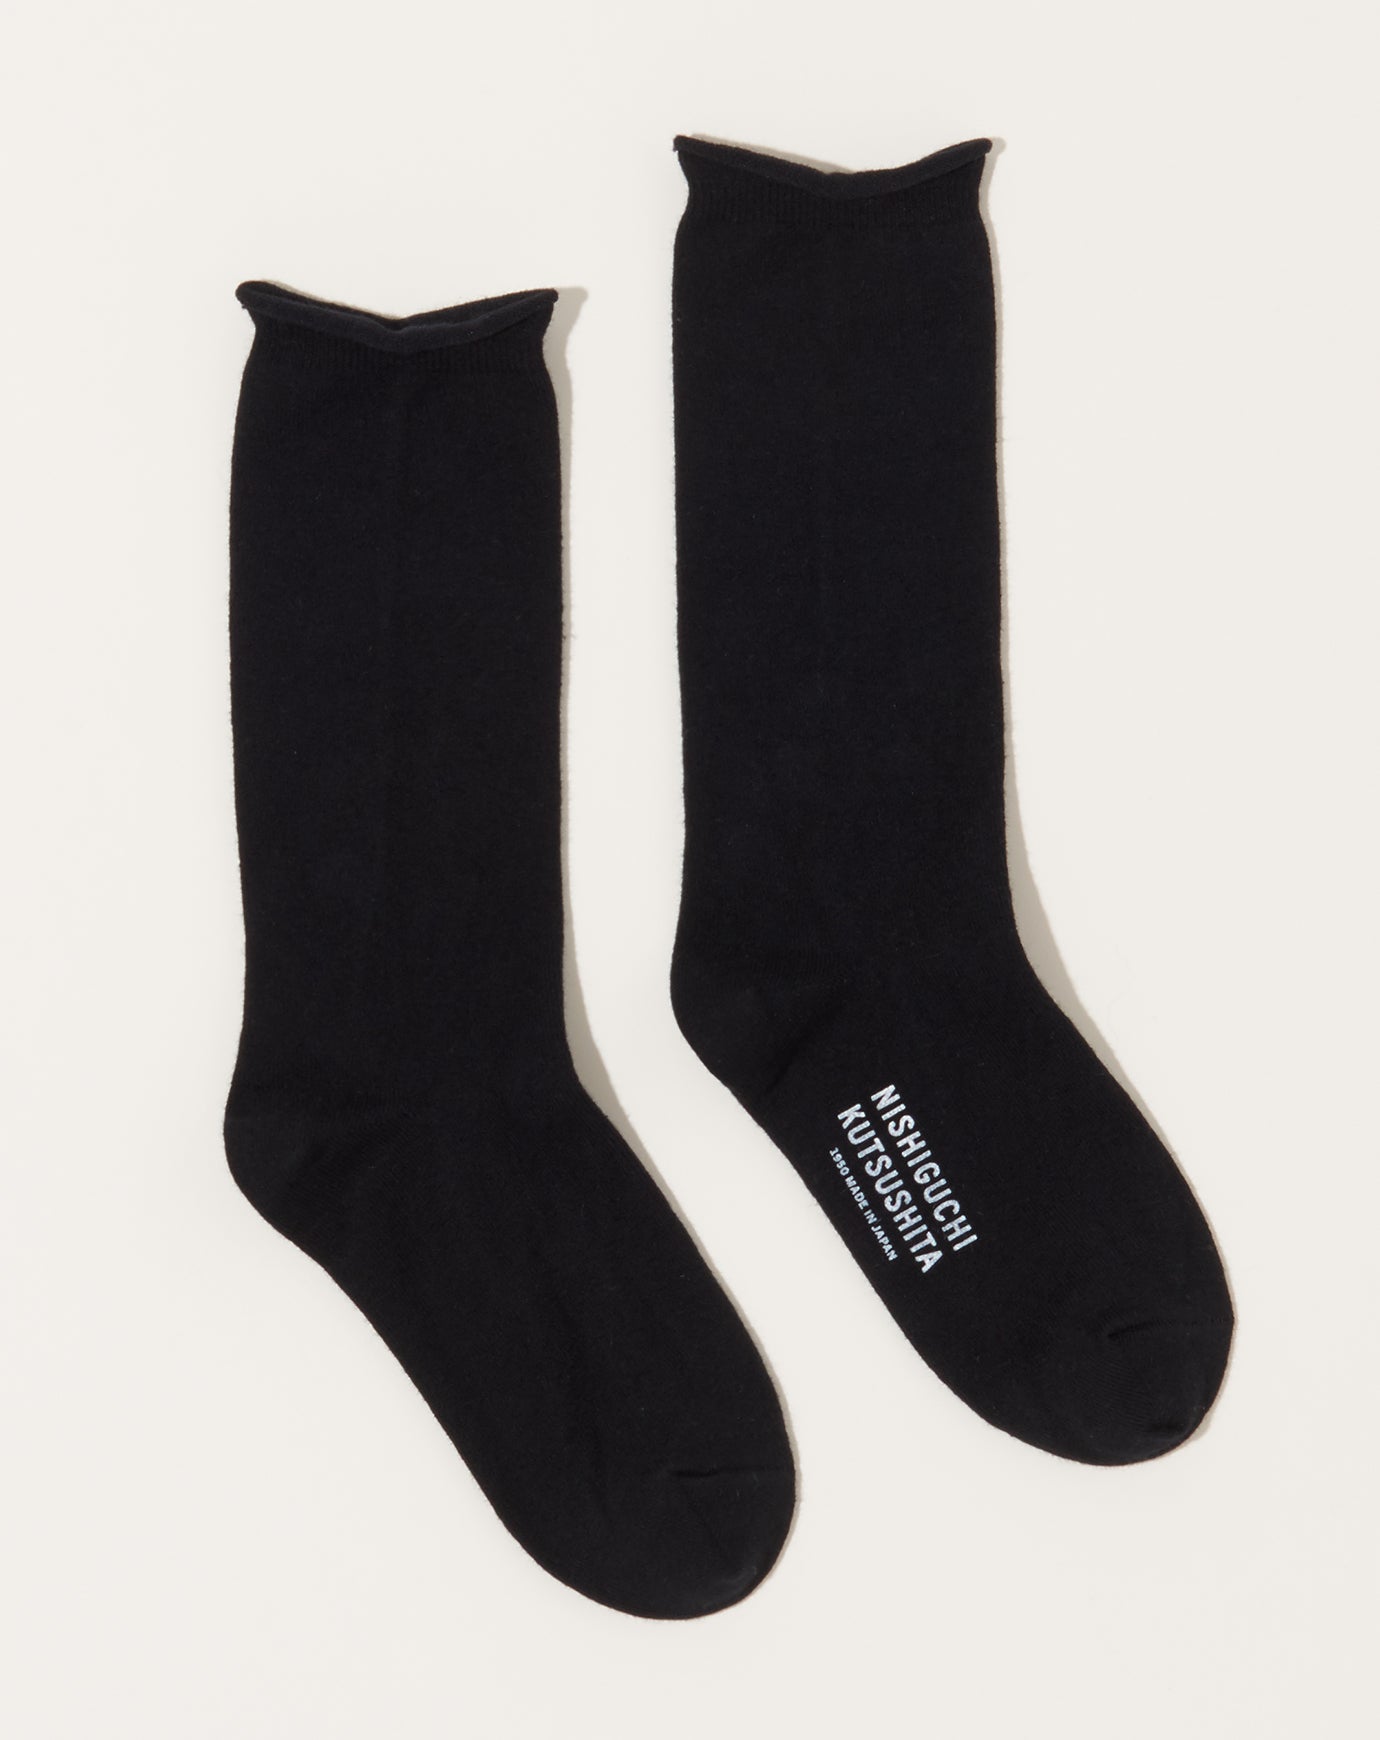 Nishiguchi Kutsushita Cashmere Cotton Socks in Black